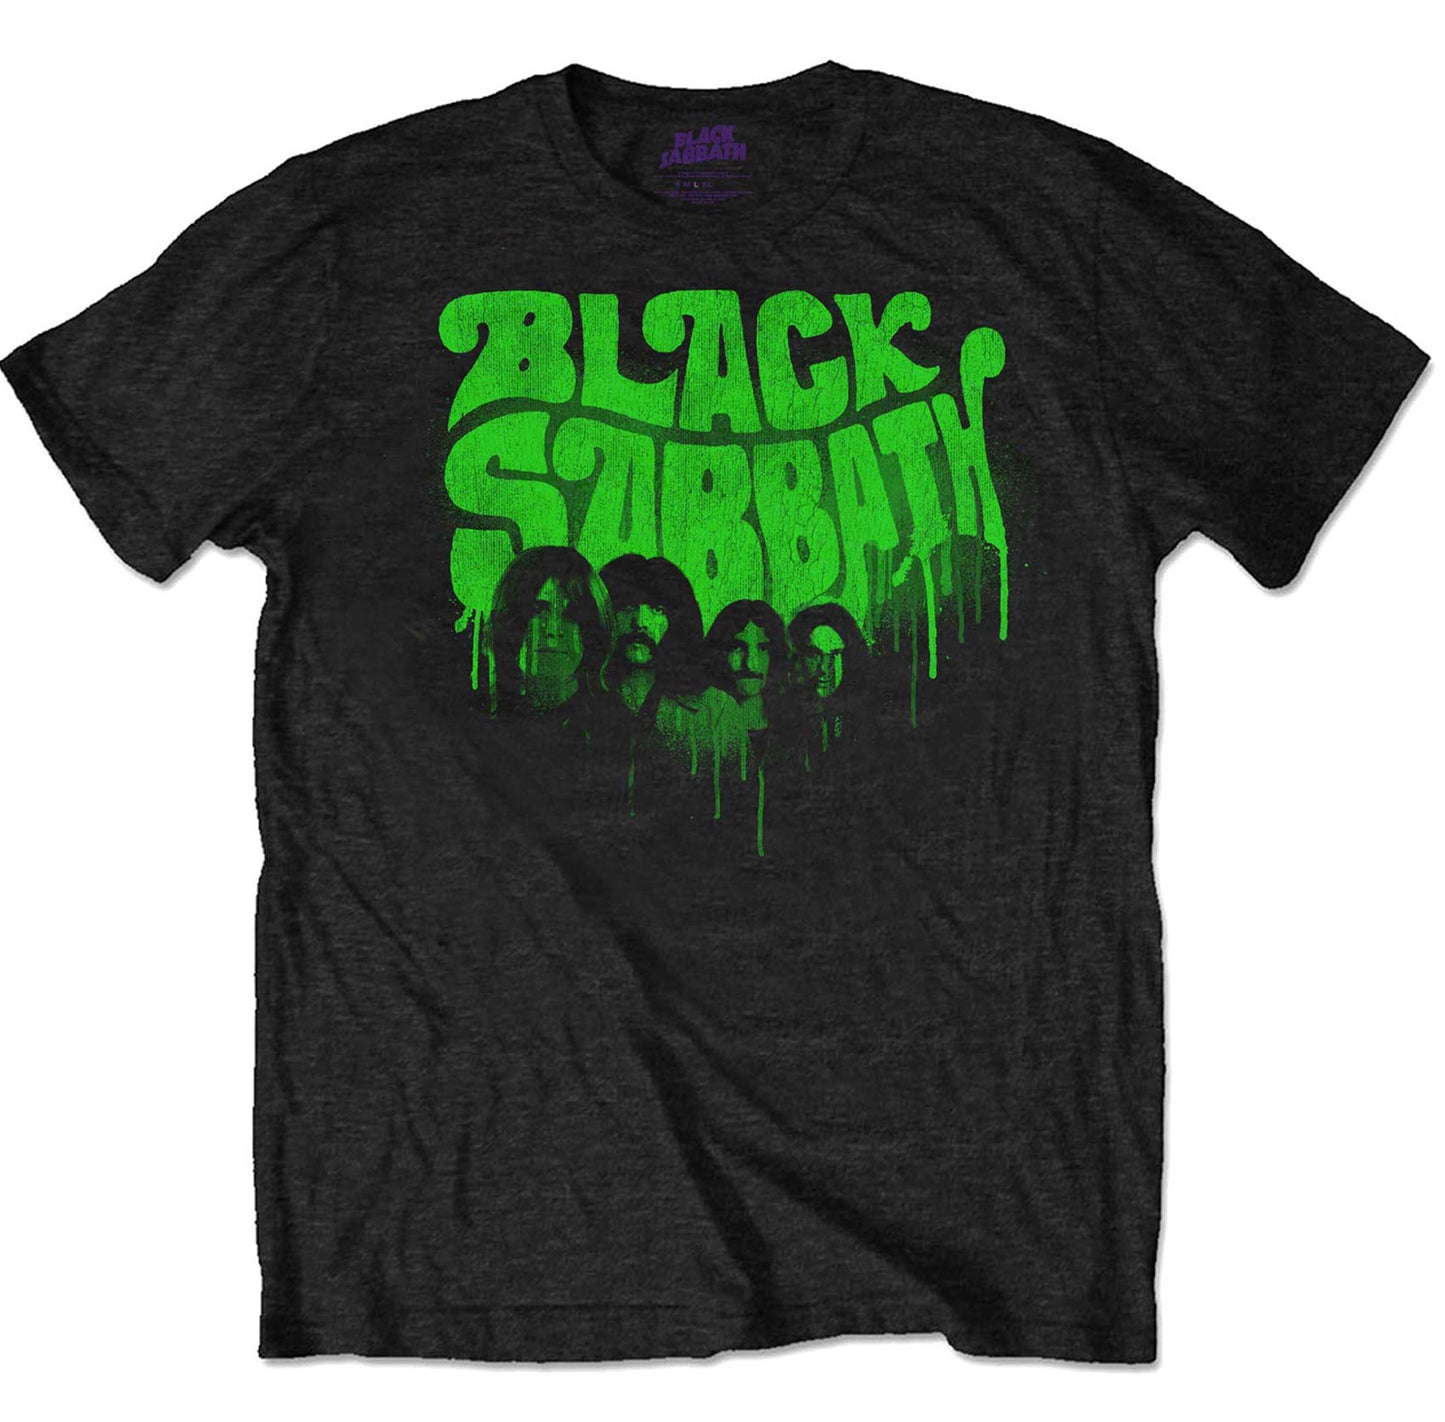 Black Sabbath T-shirts